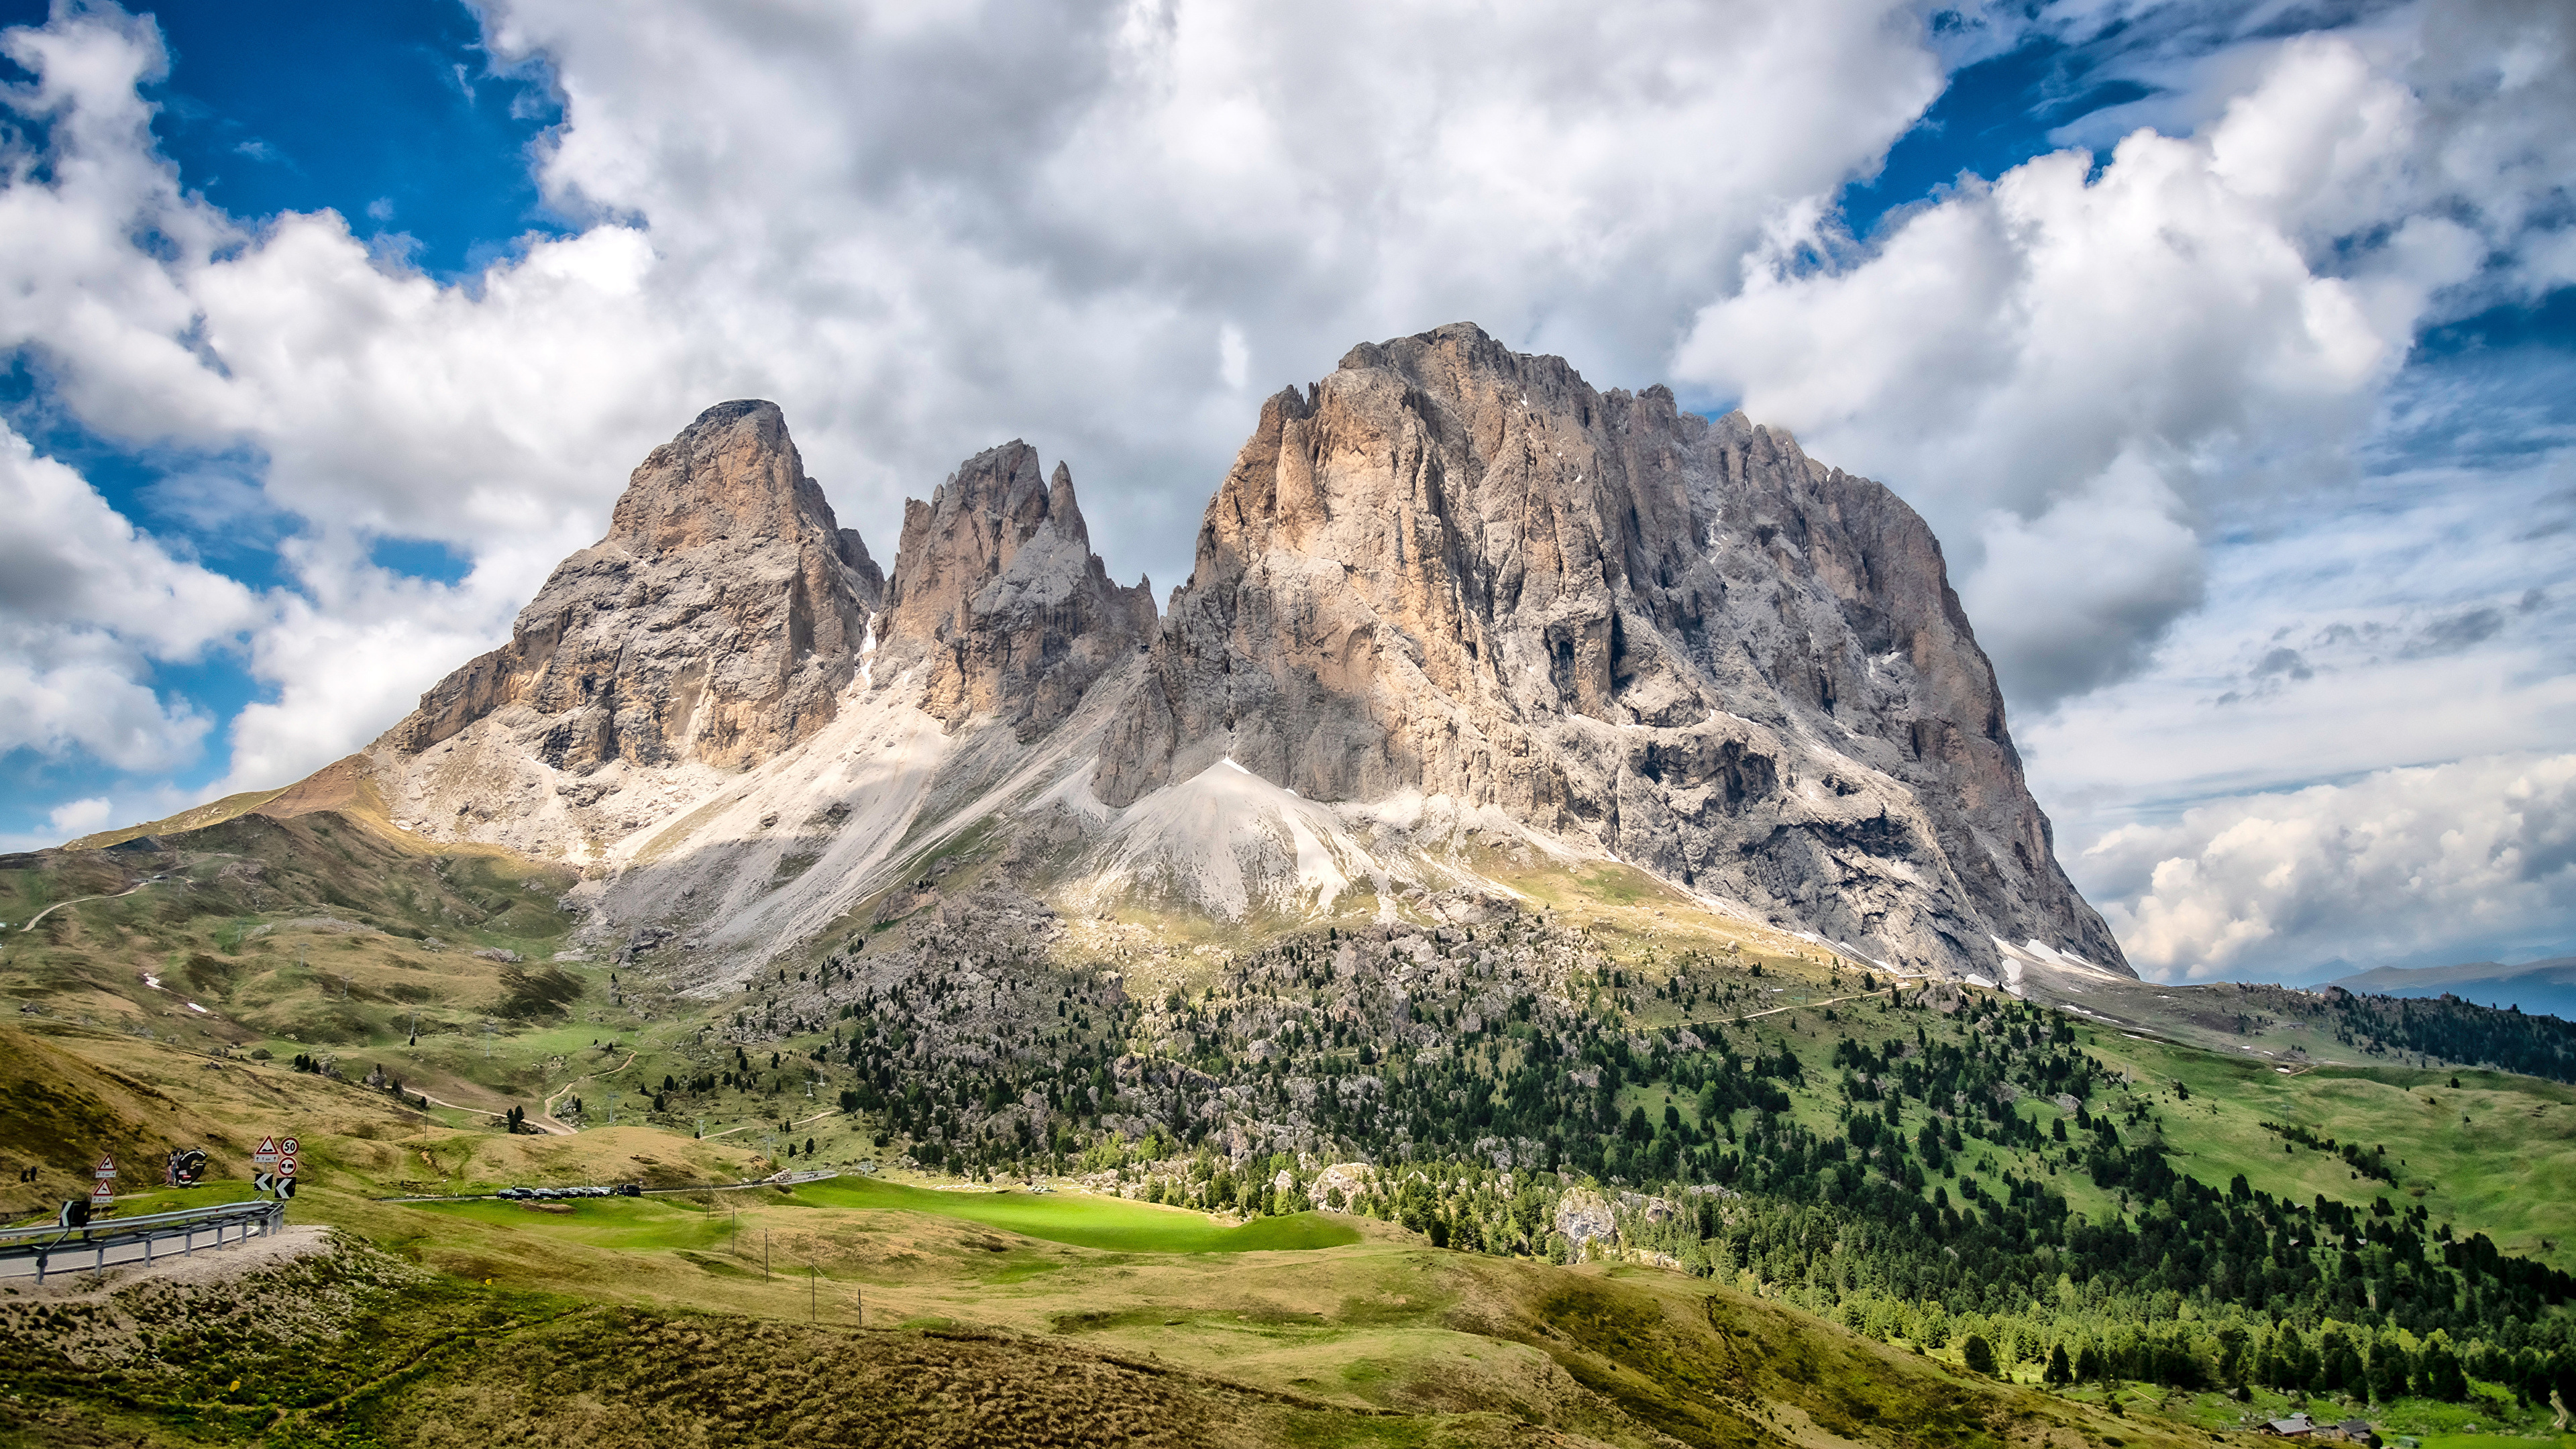 Обои для рабочего стола Альпы Италия Dolomites гора Скала Природа Облака 3840x2160 альп Горы Утес скале скалы облако облачно